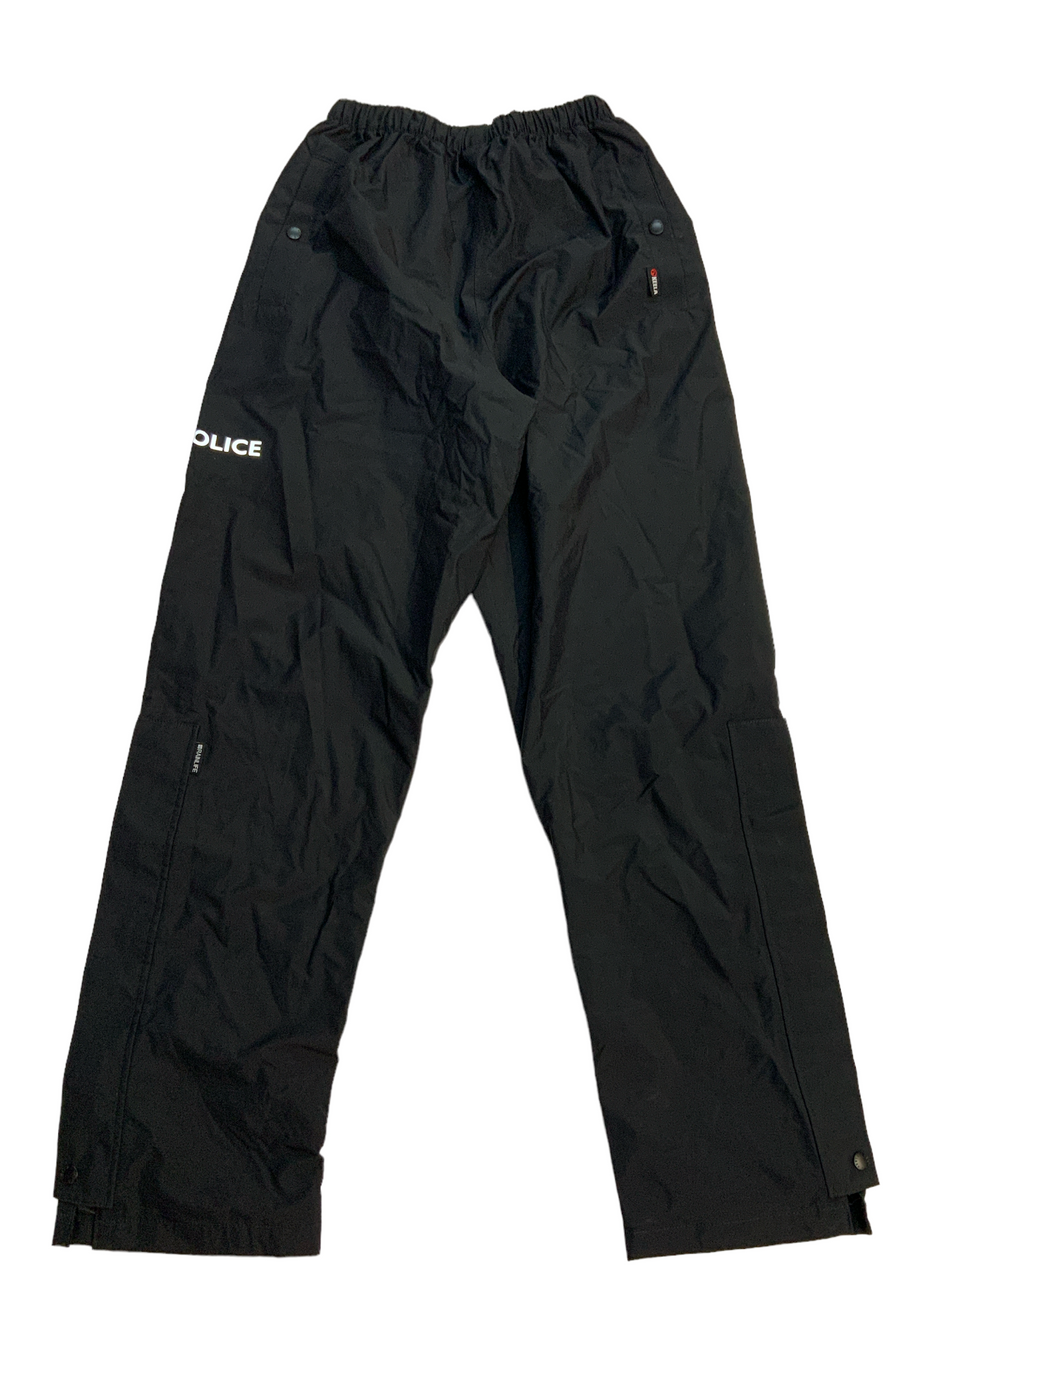 New Police Keela Rainlife 5000 Black Waterproof Trousers Foul Weather ...